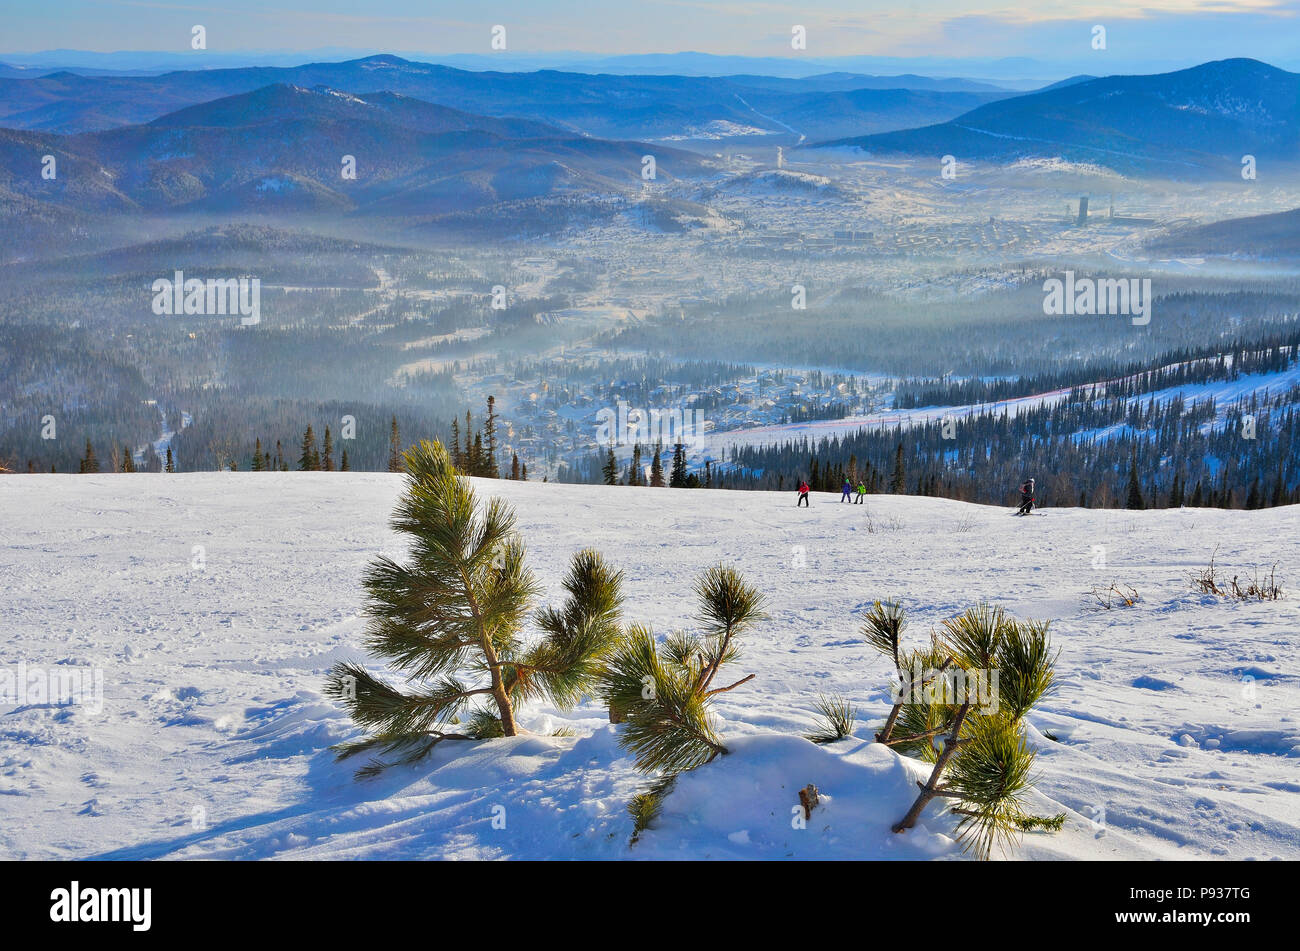 Rusia, Siberia, SHEREGESH - Enero 11, 2016: mañana soleada y ftosty bruma sobre el ski resort Sheregesh - vista desde la cima de la montaña con littlel pi Foto de stock